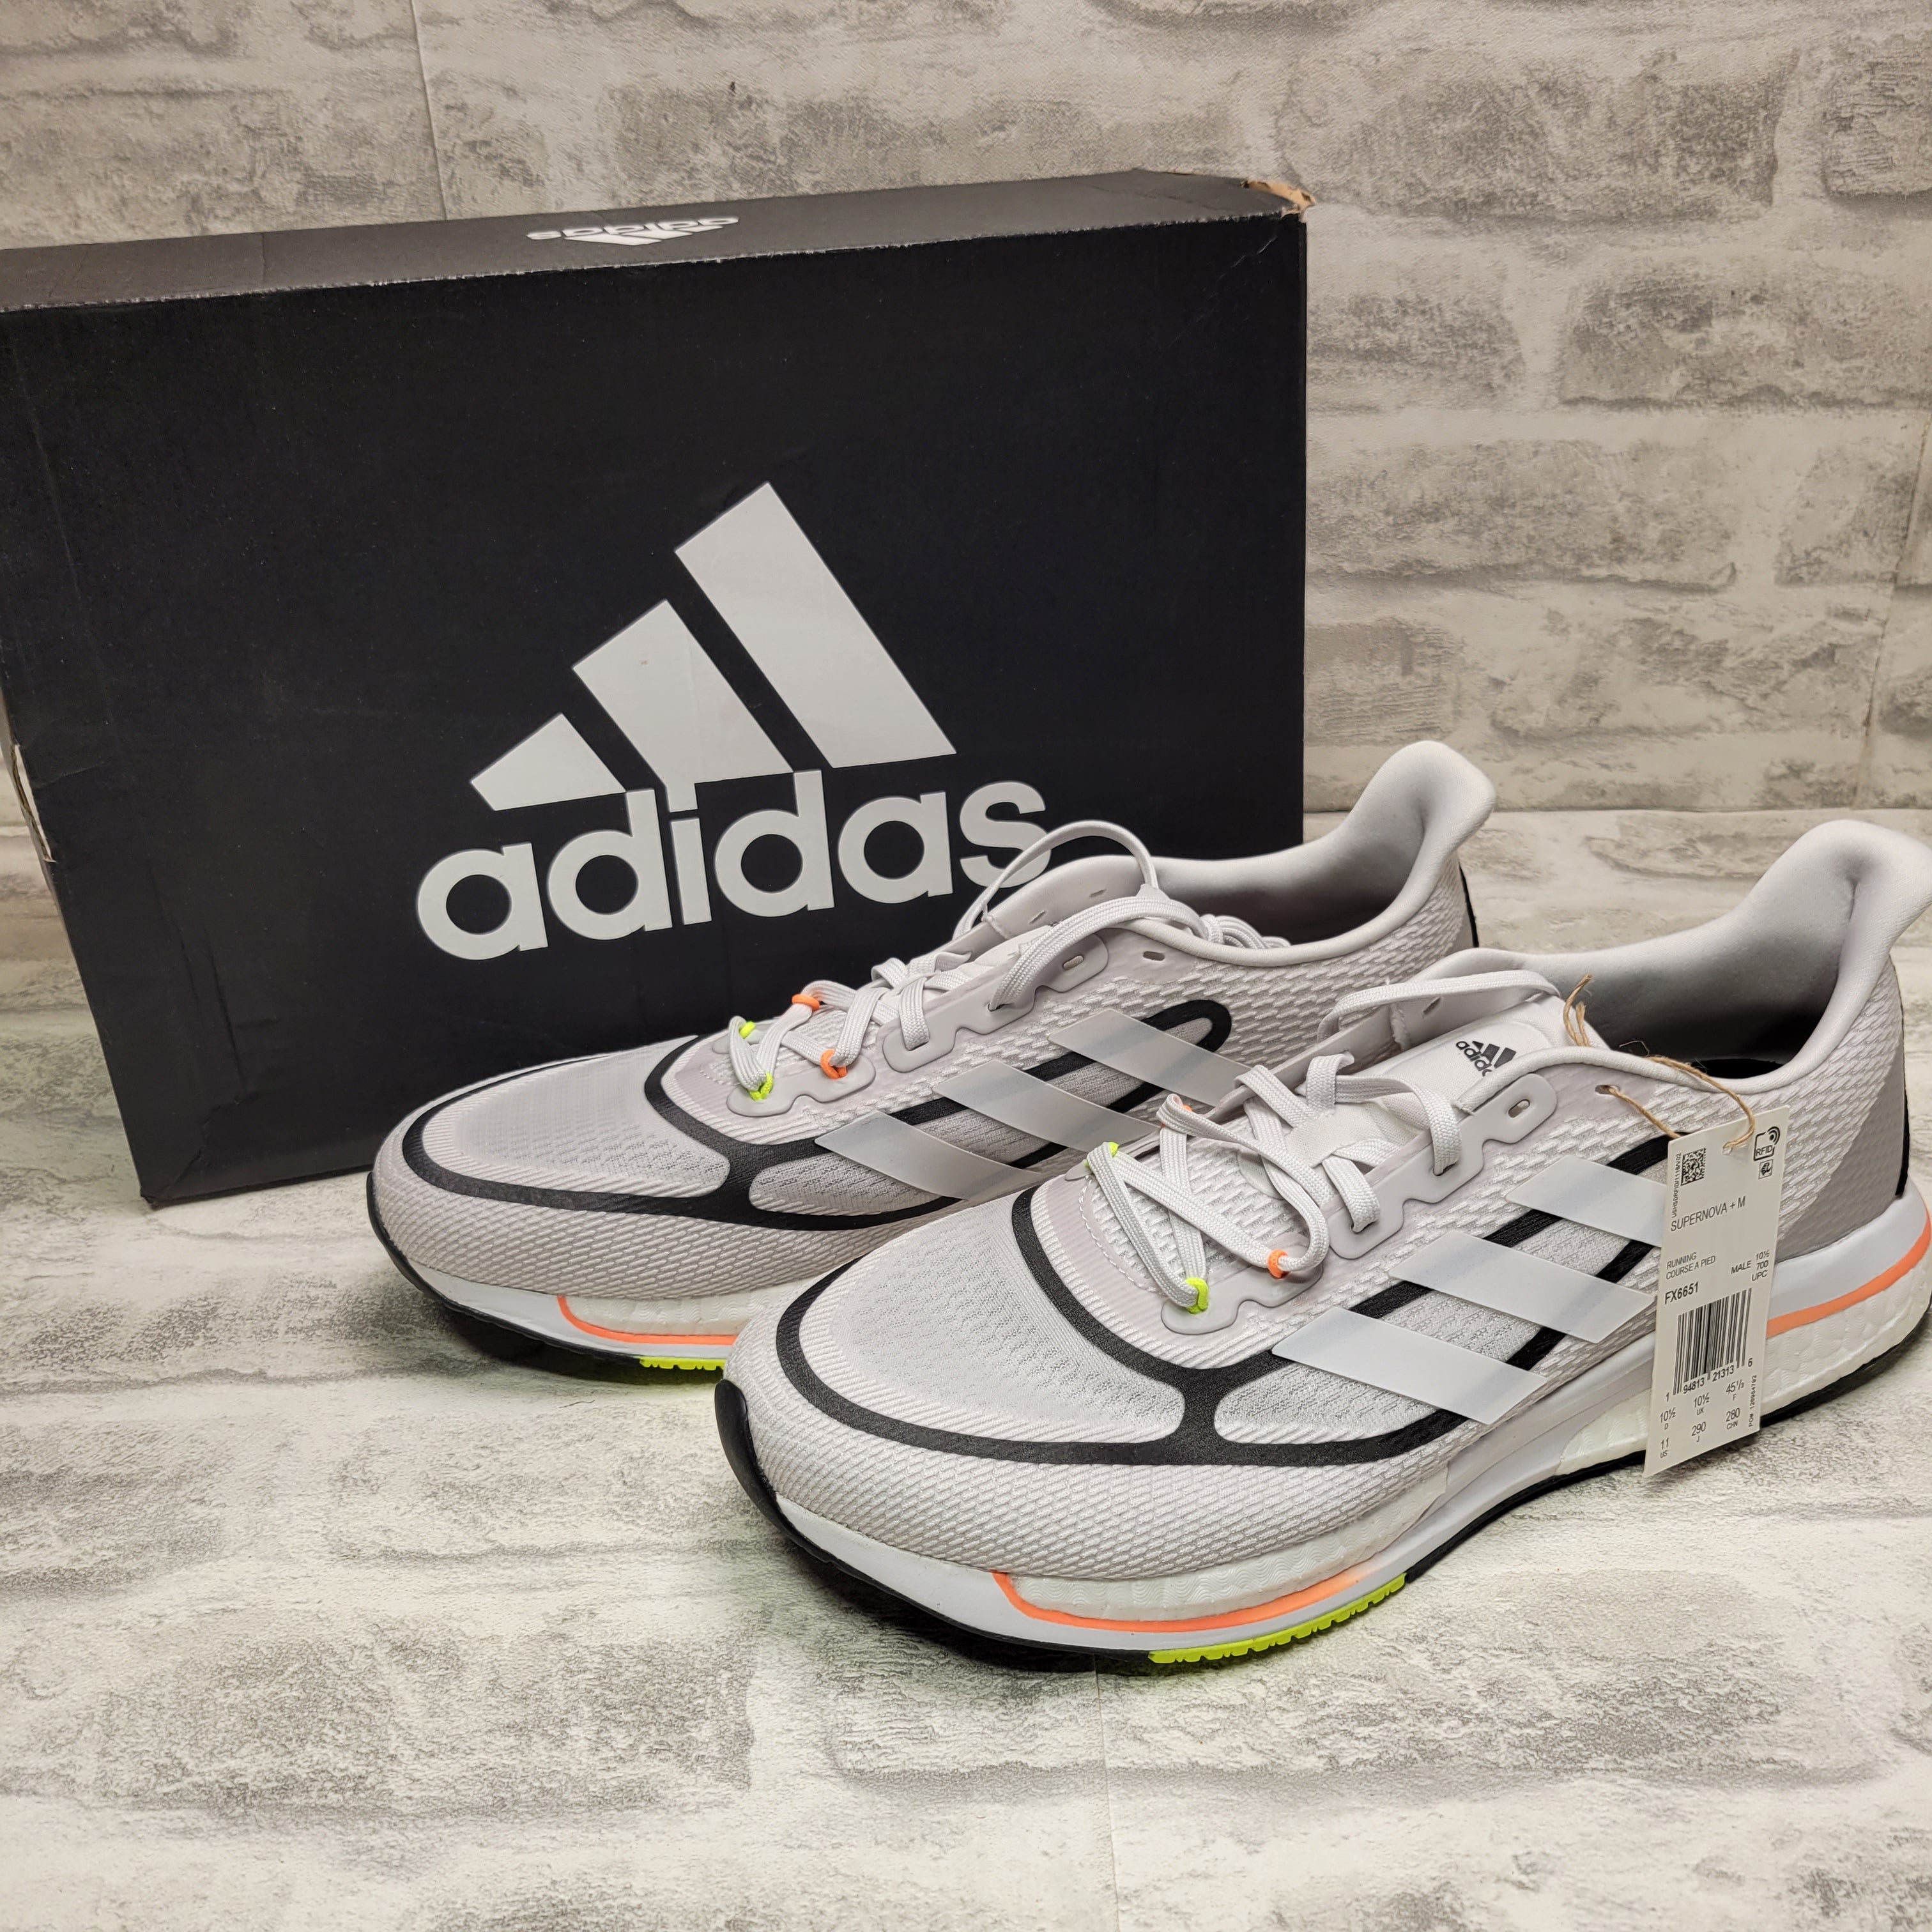 adidas Men's Supernova + Running Shoe (11, Dash Grey/White/Screaming Orange) (7774556651758)